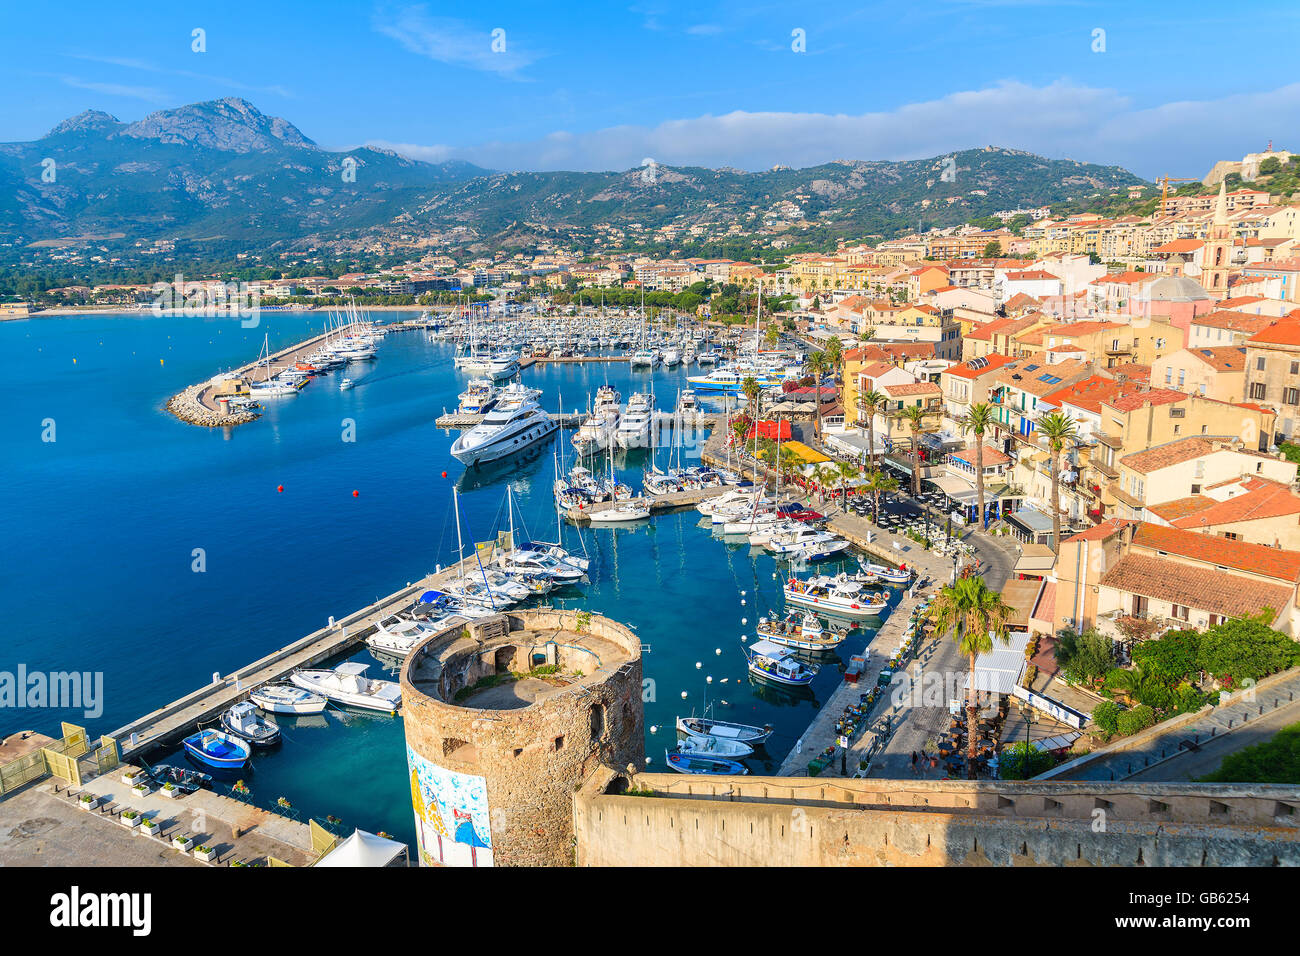 CALVI, Korsika - 29. Juni 2015: Blick auf Boote und bunte Häuser im Hafen von Calvi. Diese Stadt hat luxuriöse Yachthafen und ver Stockfoto